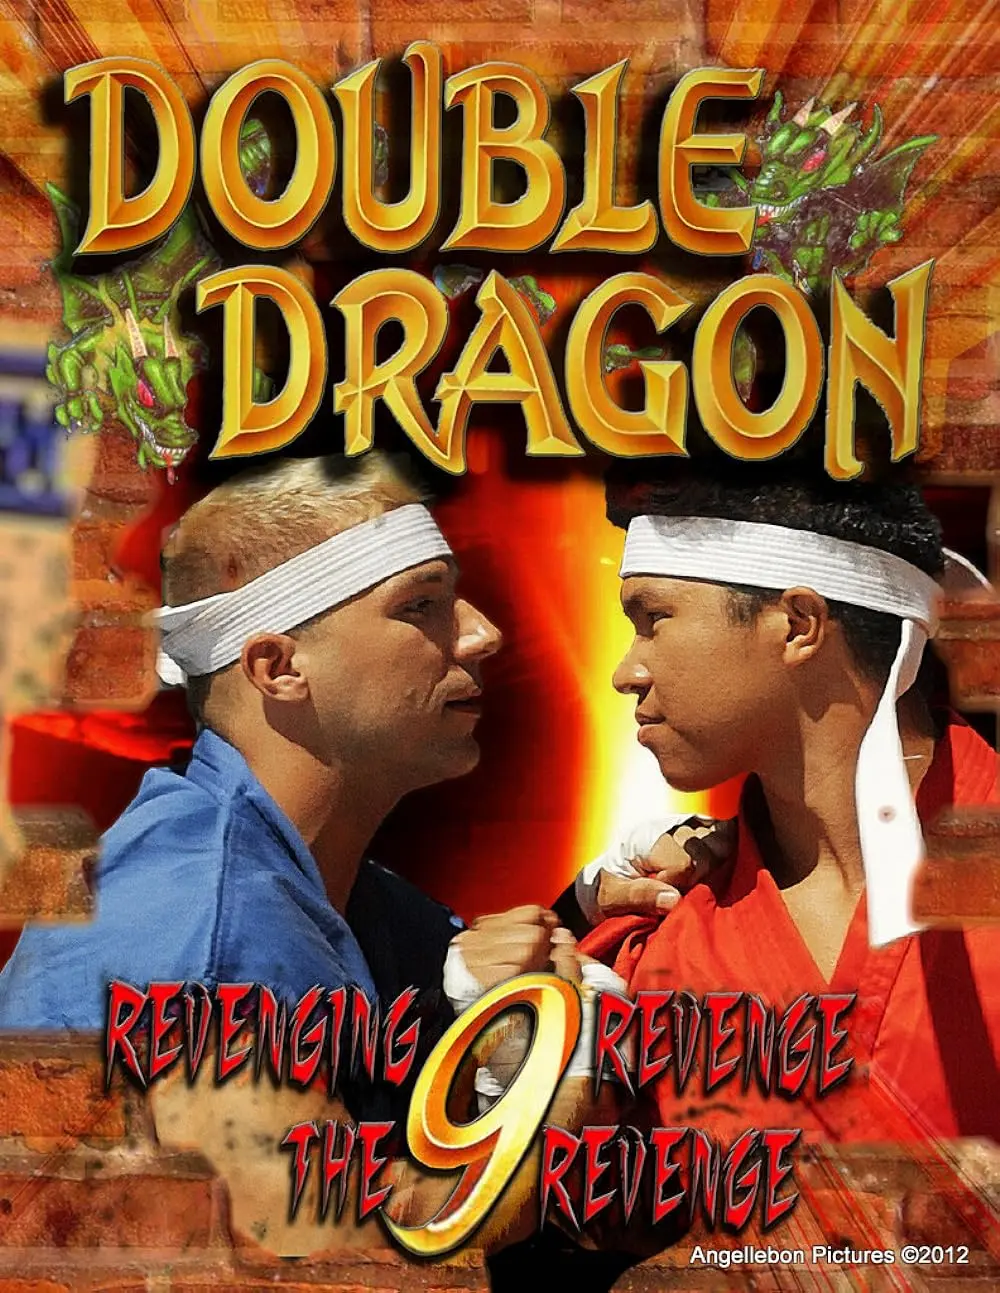 Double Dragon 9 Revenging Revenge the Revenge (2012)